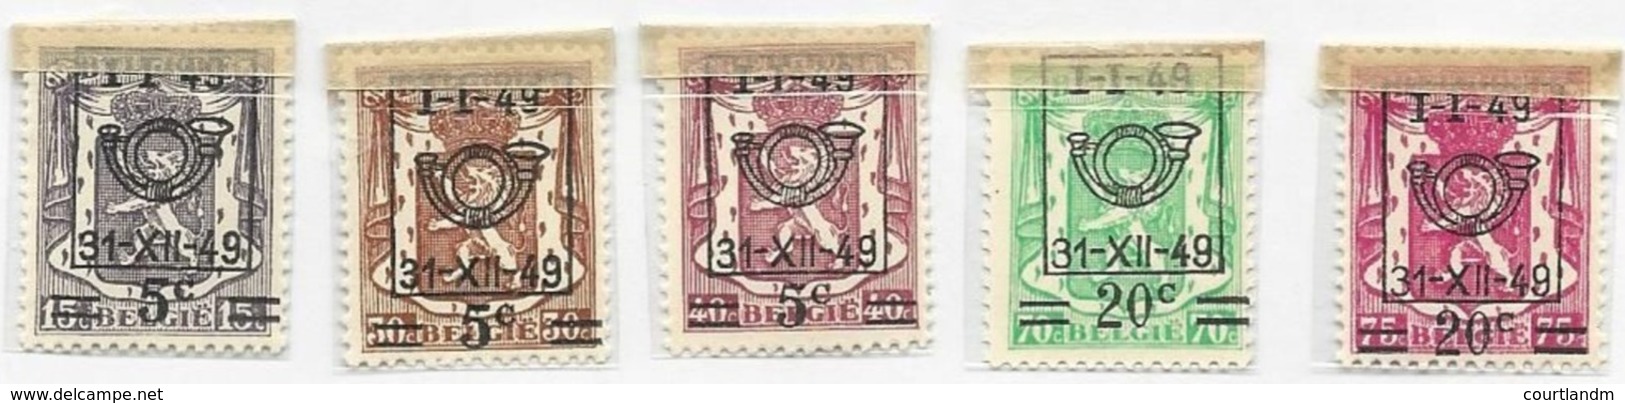 BELGIUM - COAT OF ARMS - Unused Stamps